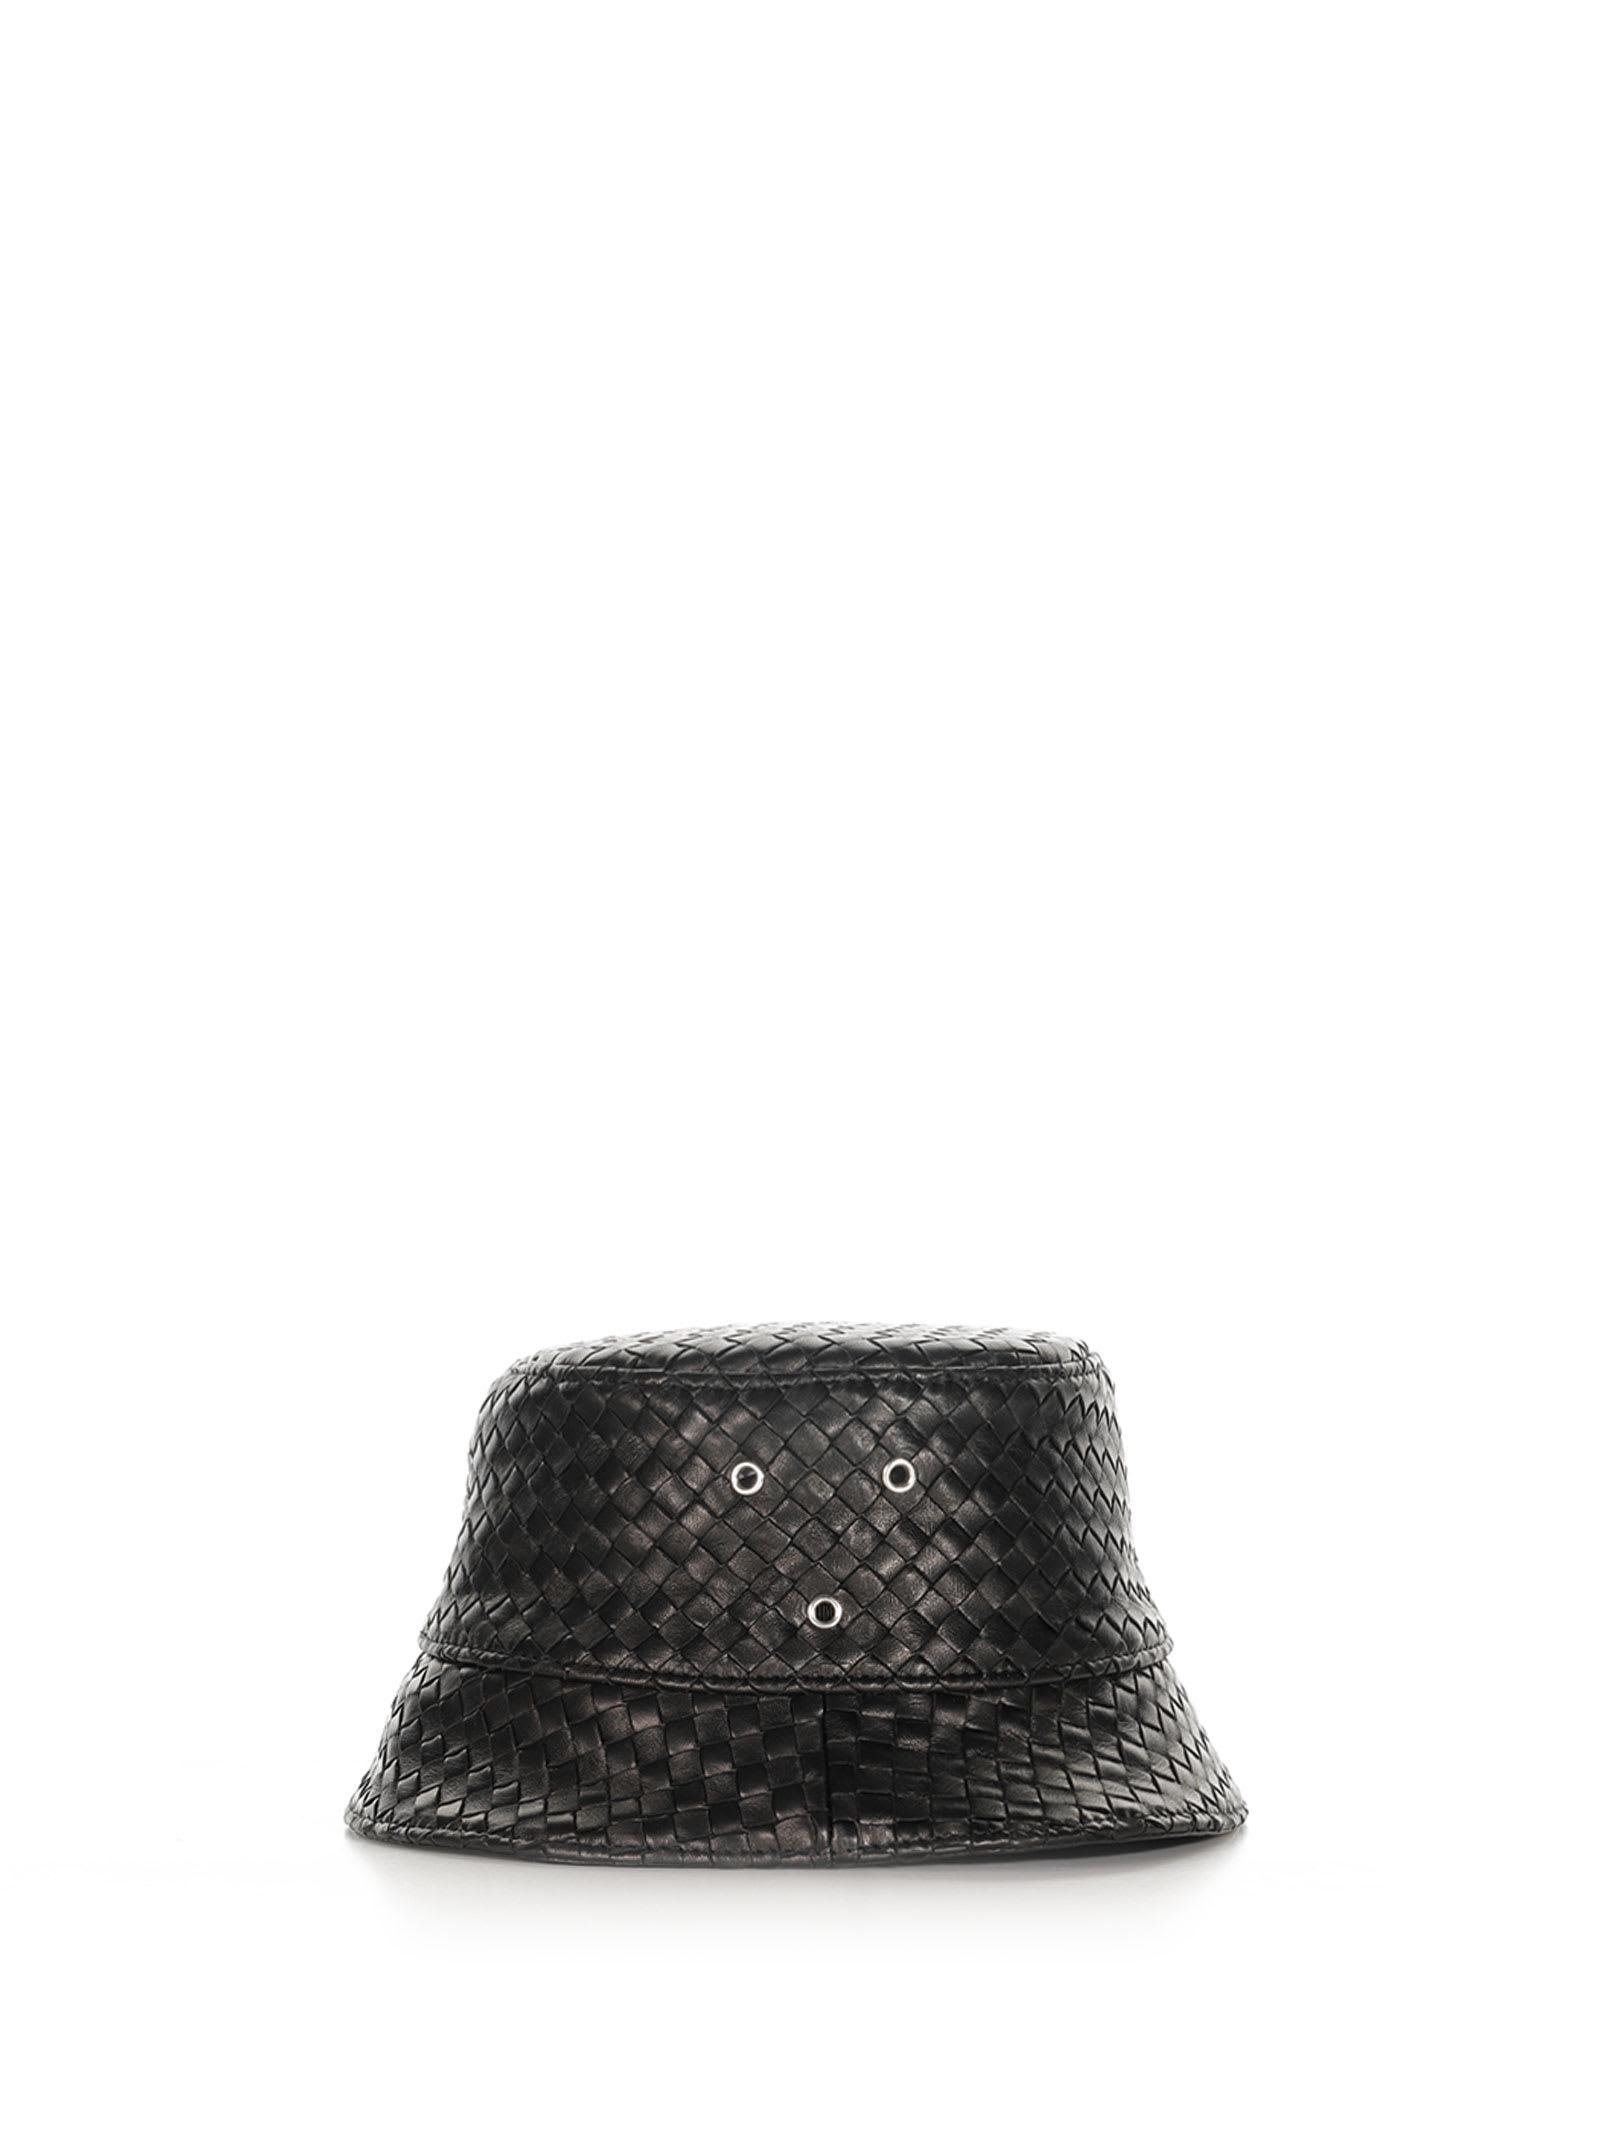 Bottega Veneta Braided Leather Hat in Black for Men